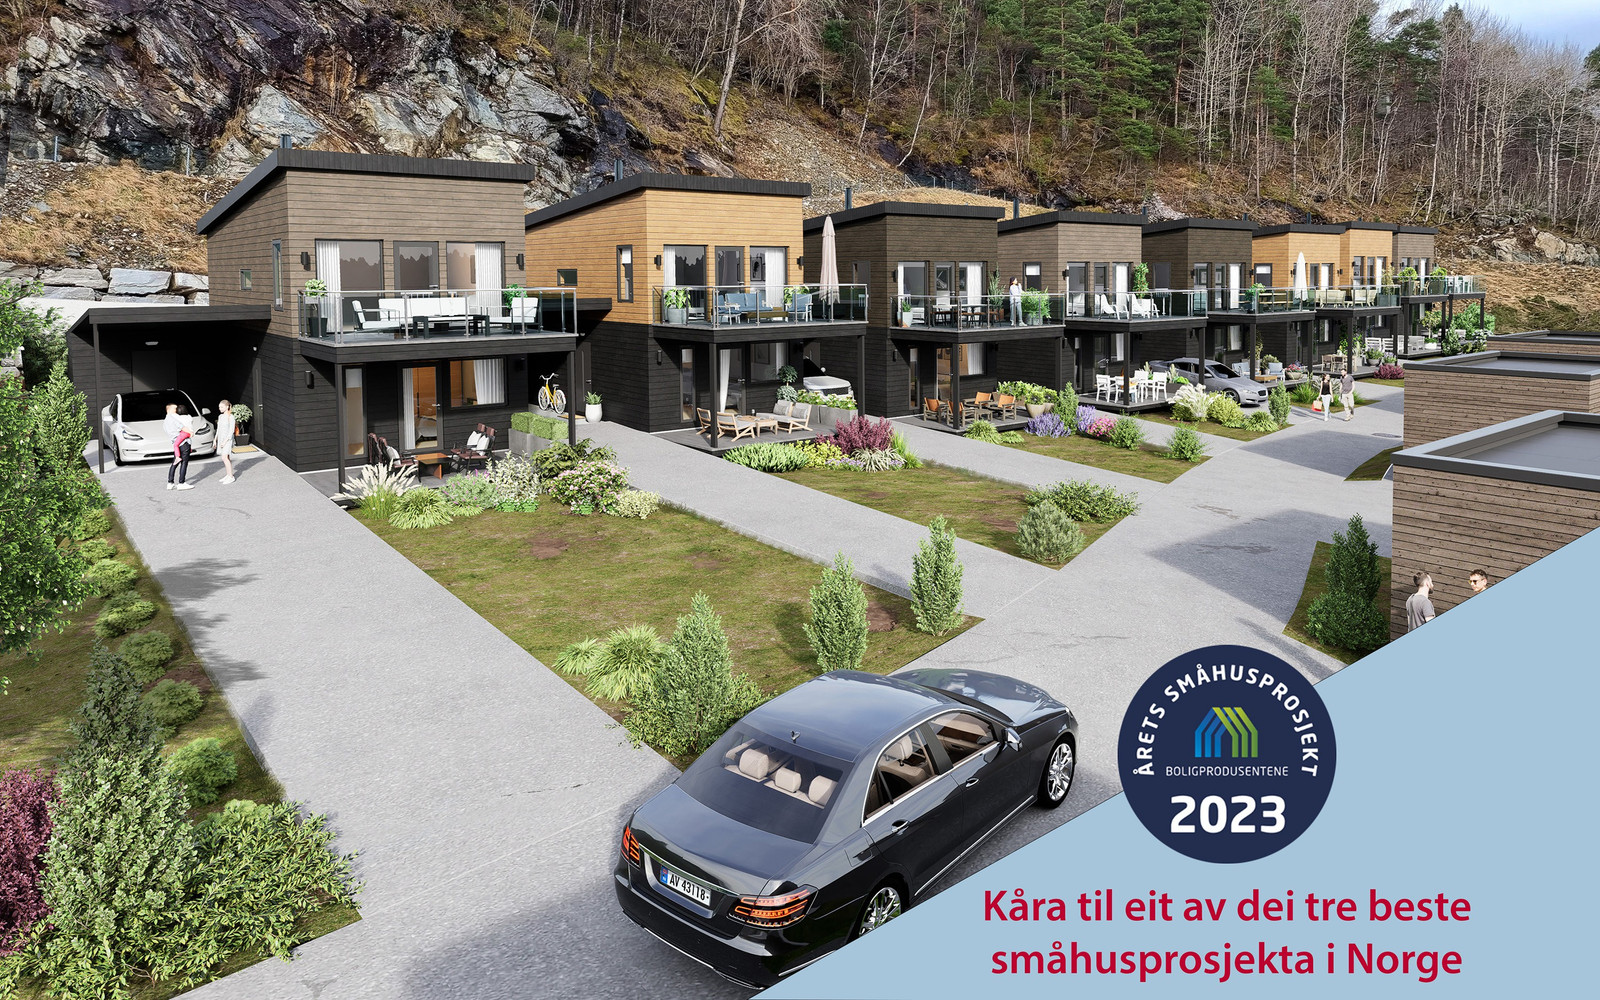 Instetunet byggefelt, kåra til eit av dei beste småhusprosjekta i Norge 2023.